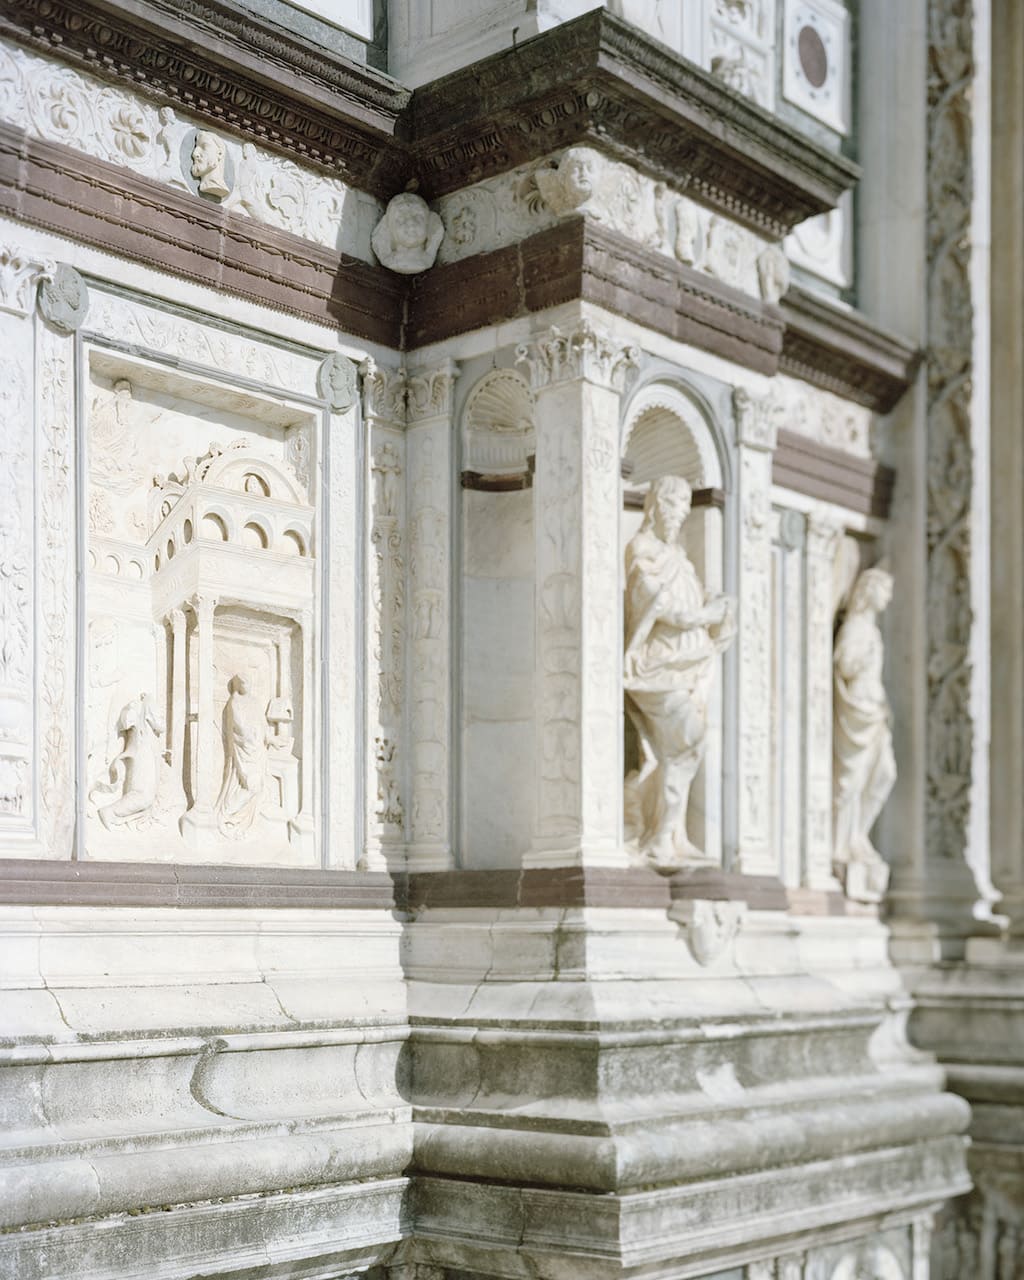 Federico Clavarino – DRM-Lom/MiC Il calco e la salma, 2022 Complesso monumentale della Certosa di Pavia